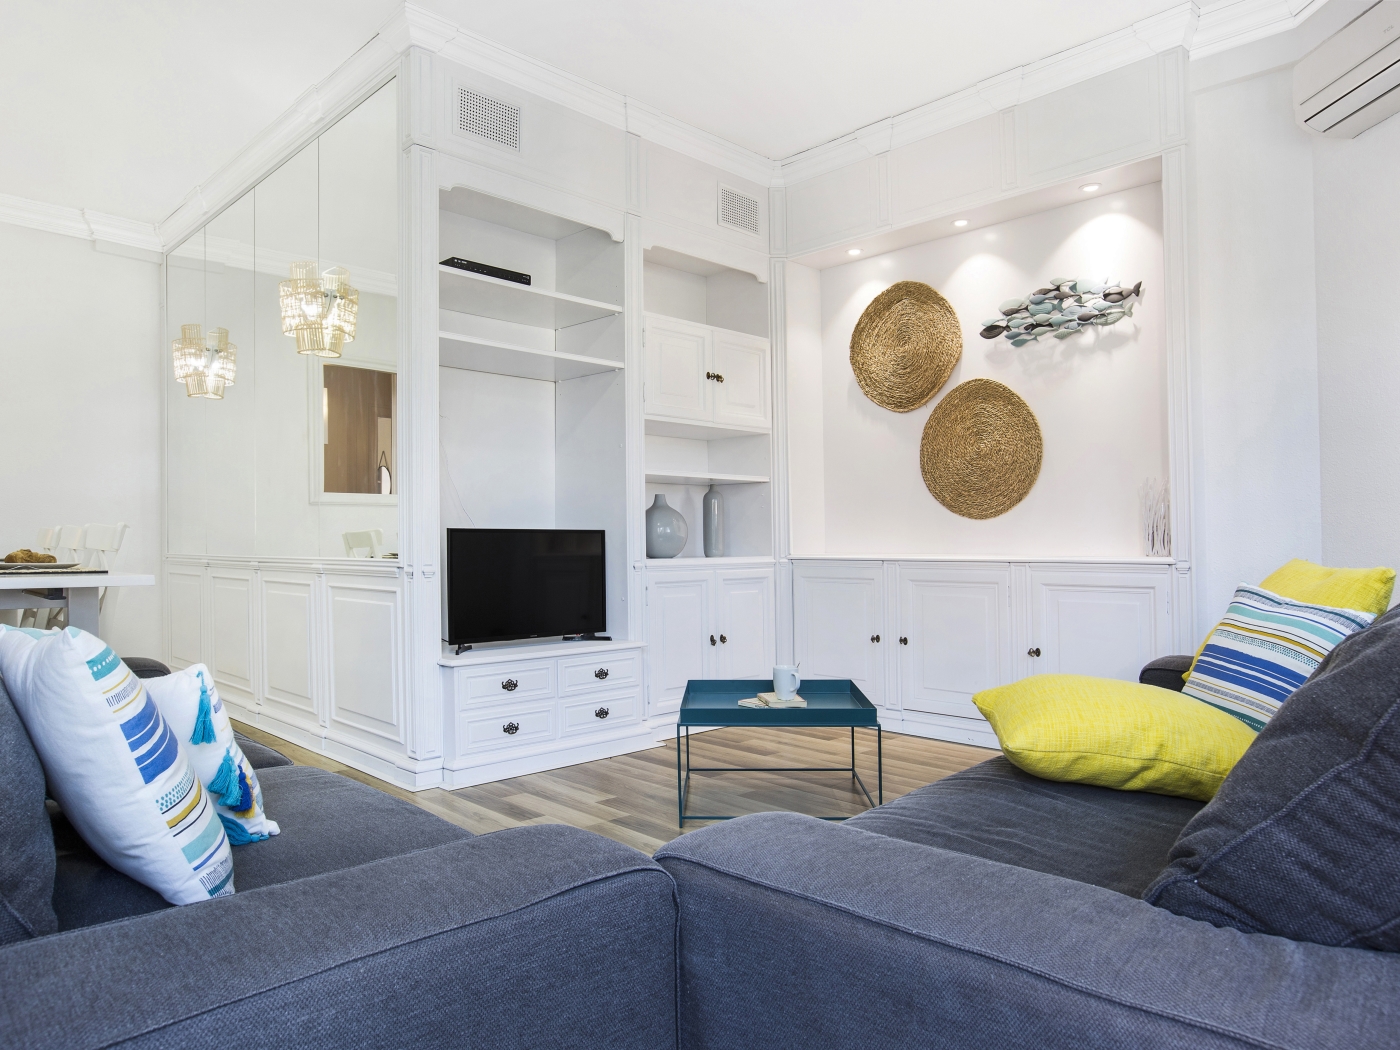 Exclusivo y espacioso apartamento en el centro de Barcelona por meses - My Space Barcelona Apartamentos